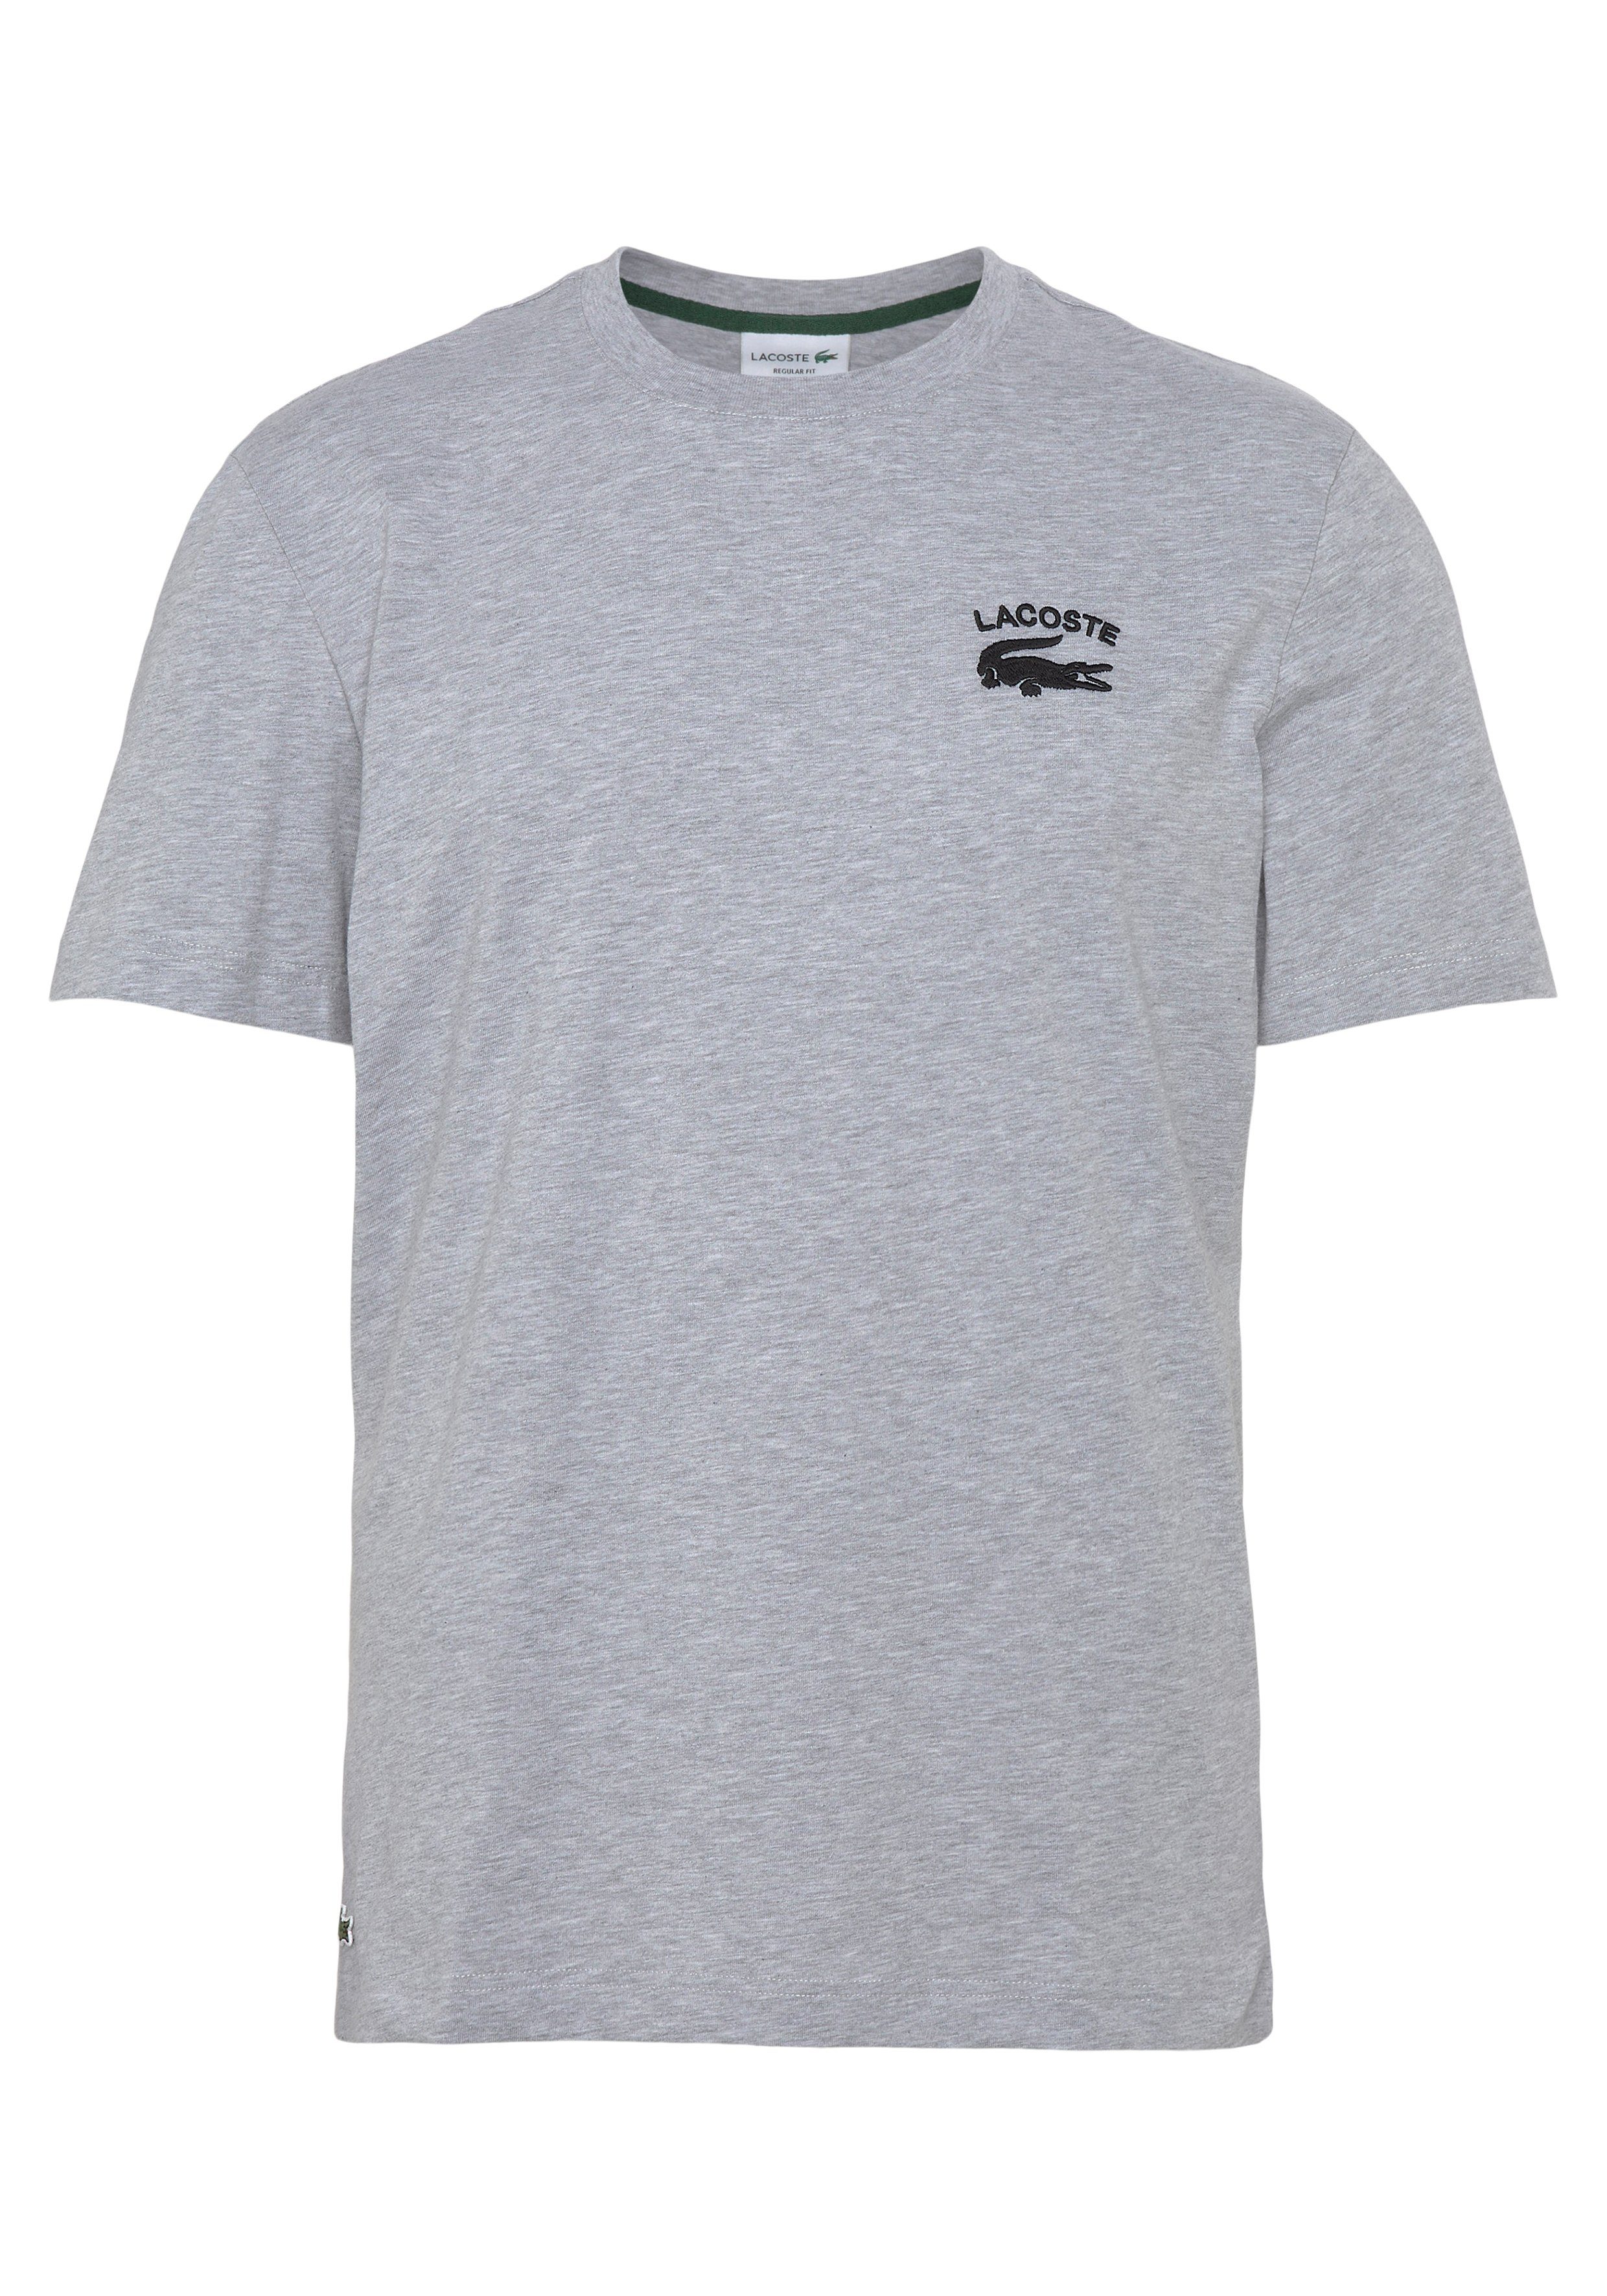 Lacoste T-Shirt mit kleinem Print hinten über dem Saum hellgrau meliert